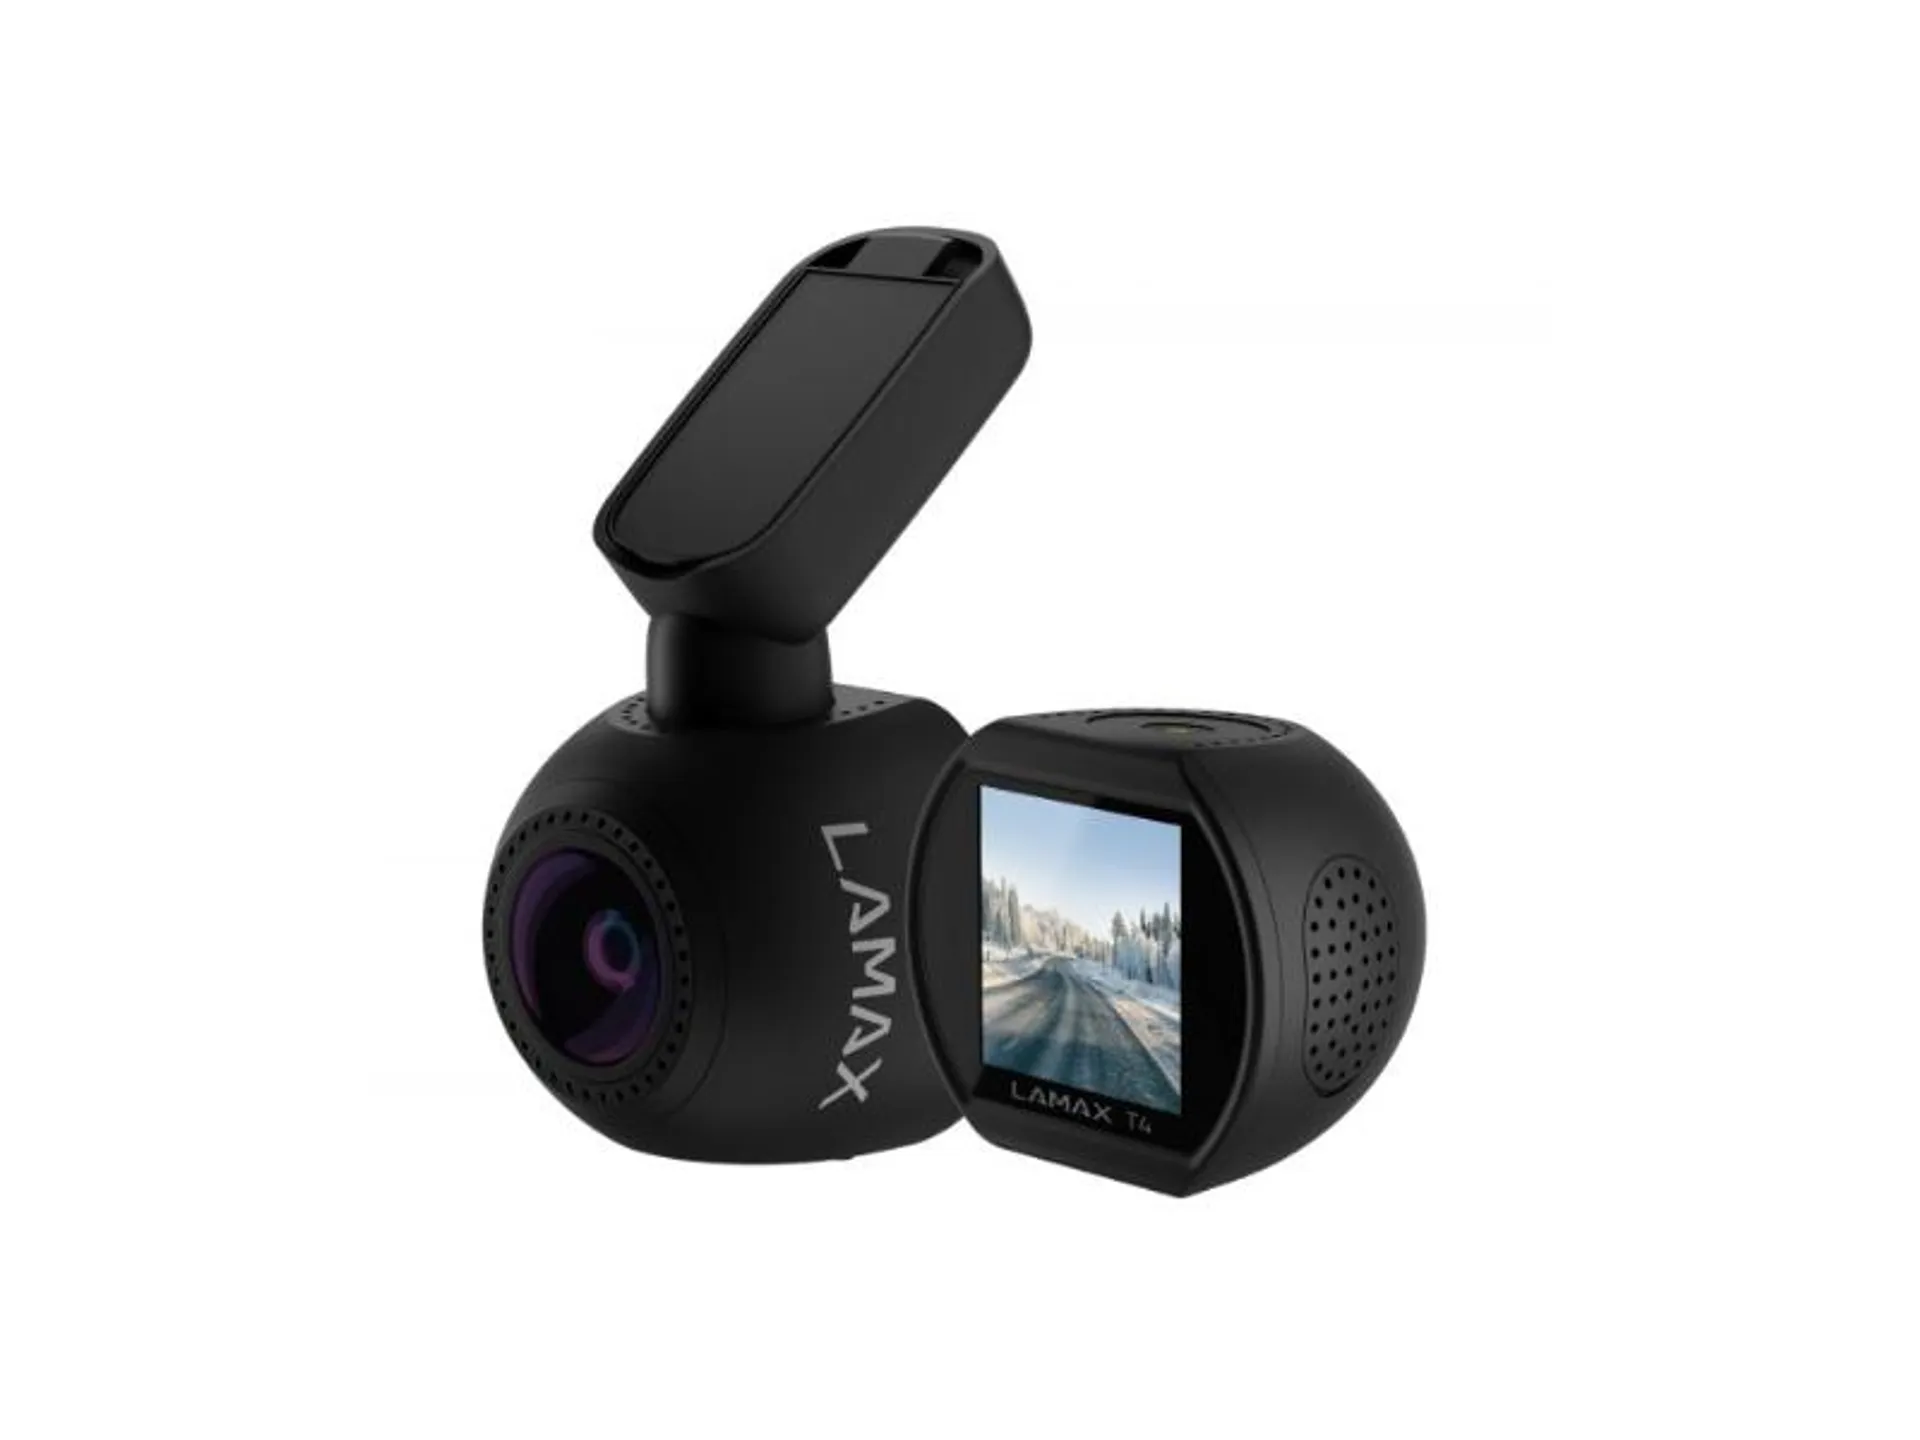 LAMAX T4 autós menetrögzítő kamera